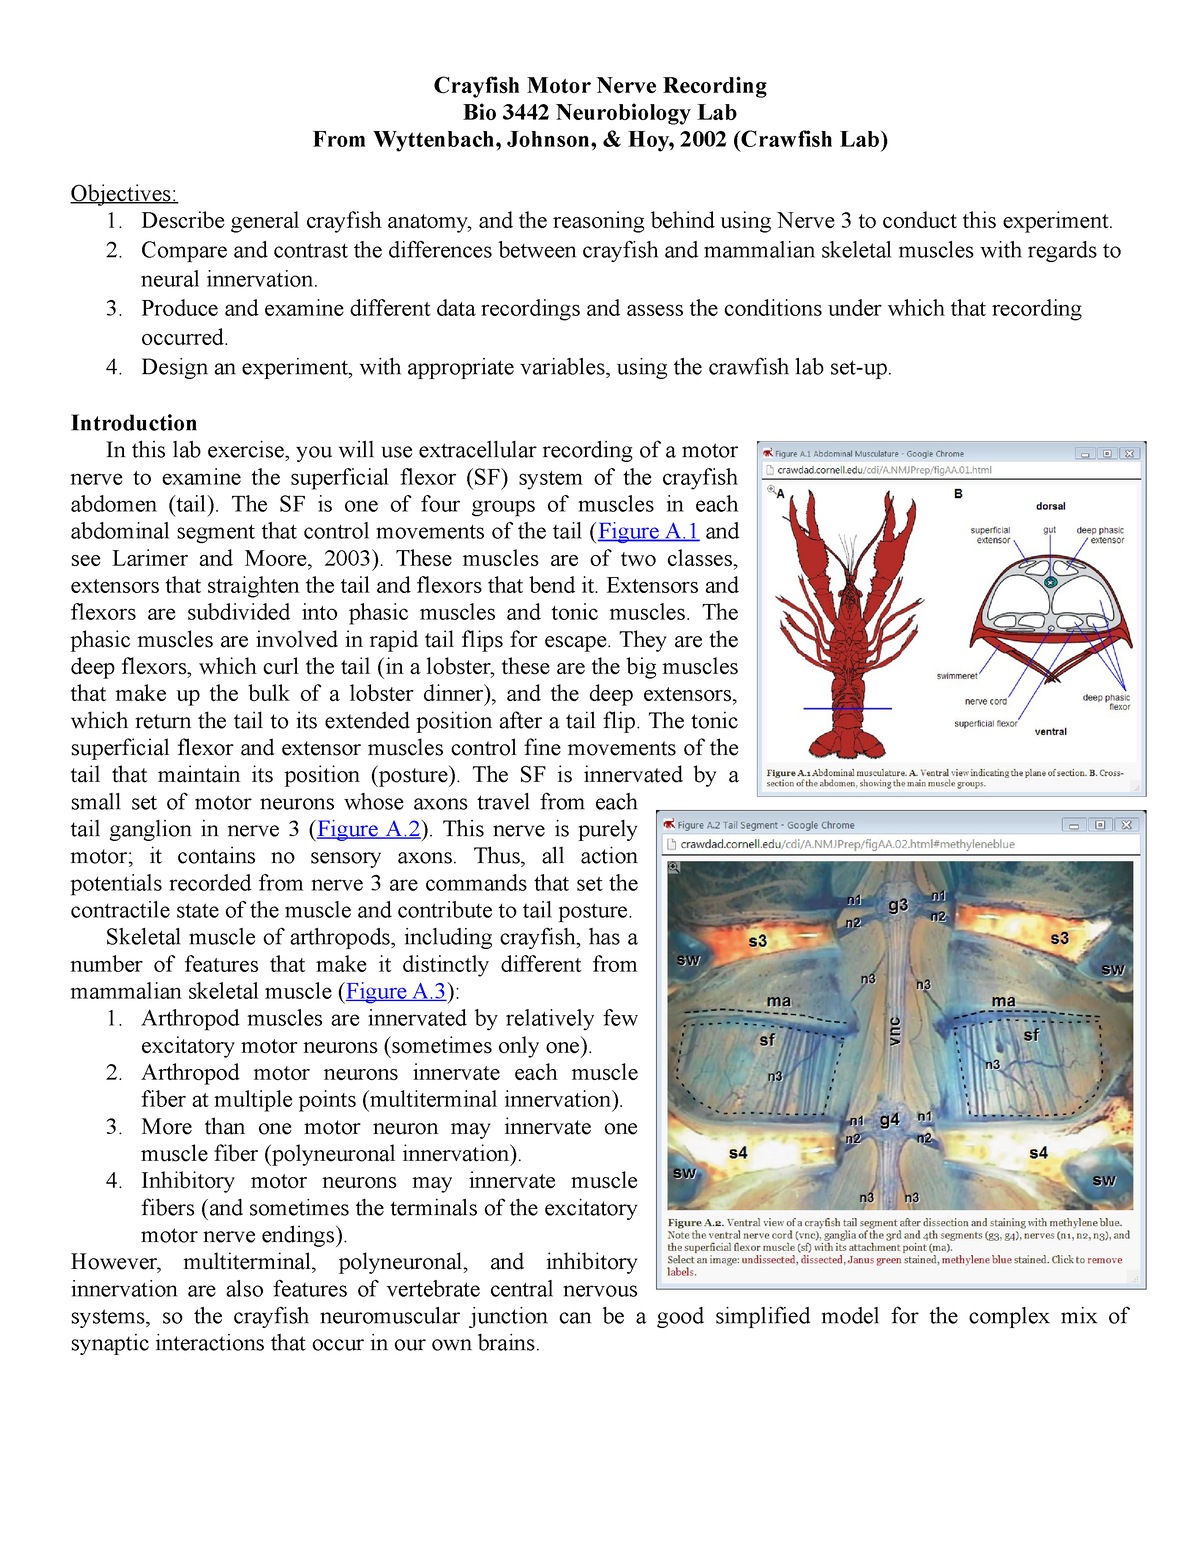 lab-3-crayfish-motor-nerve-recording-s2020-crayfish-motor-nerve-recording-bio-3442